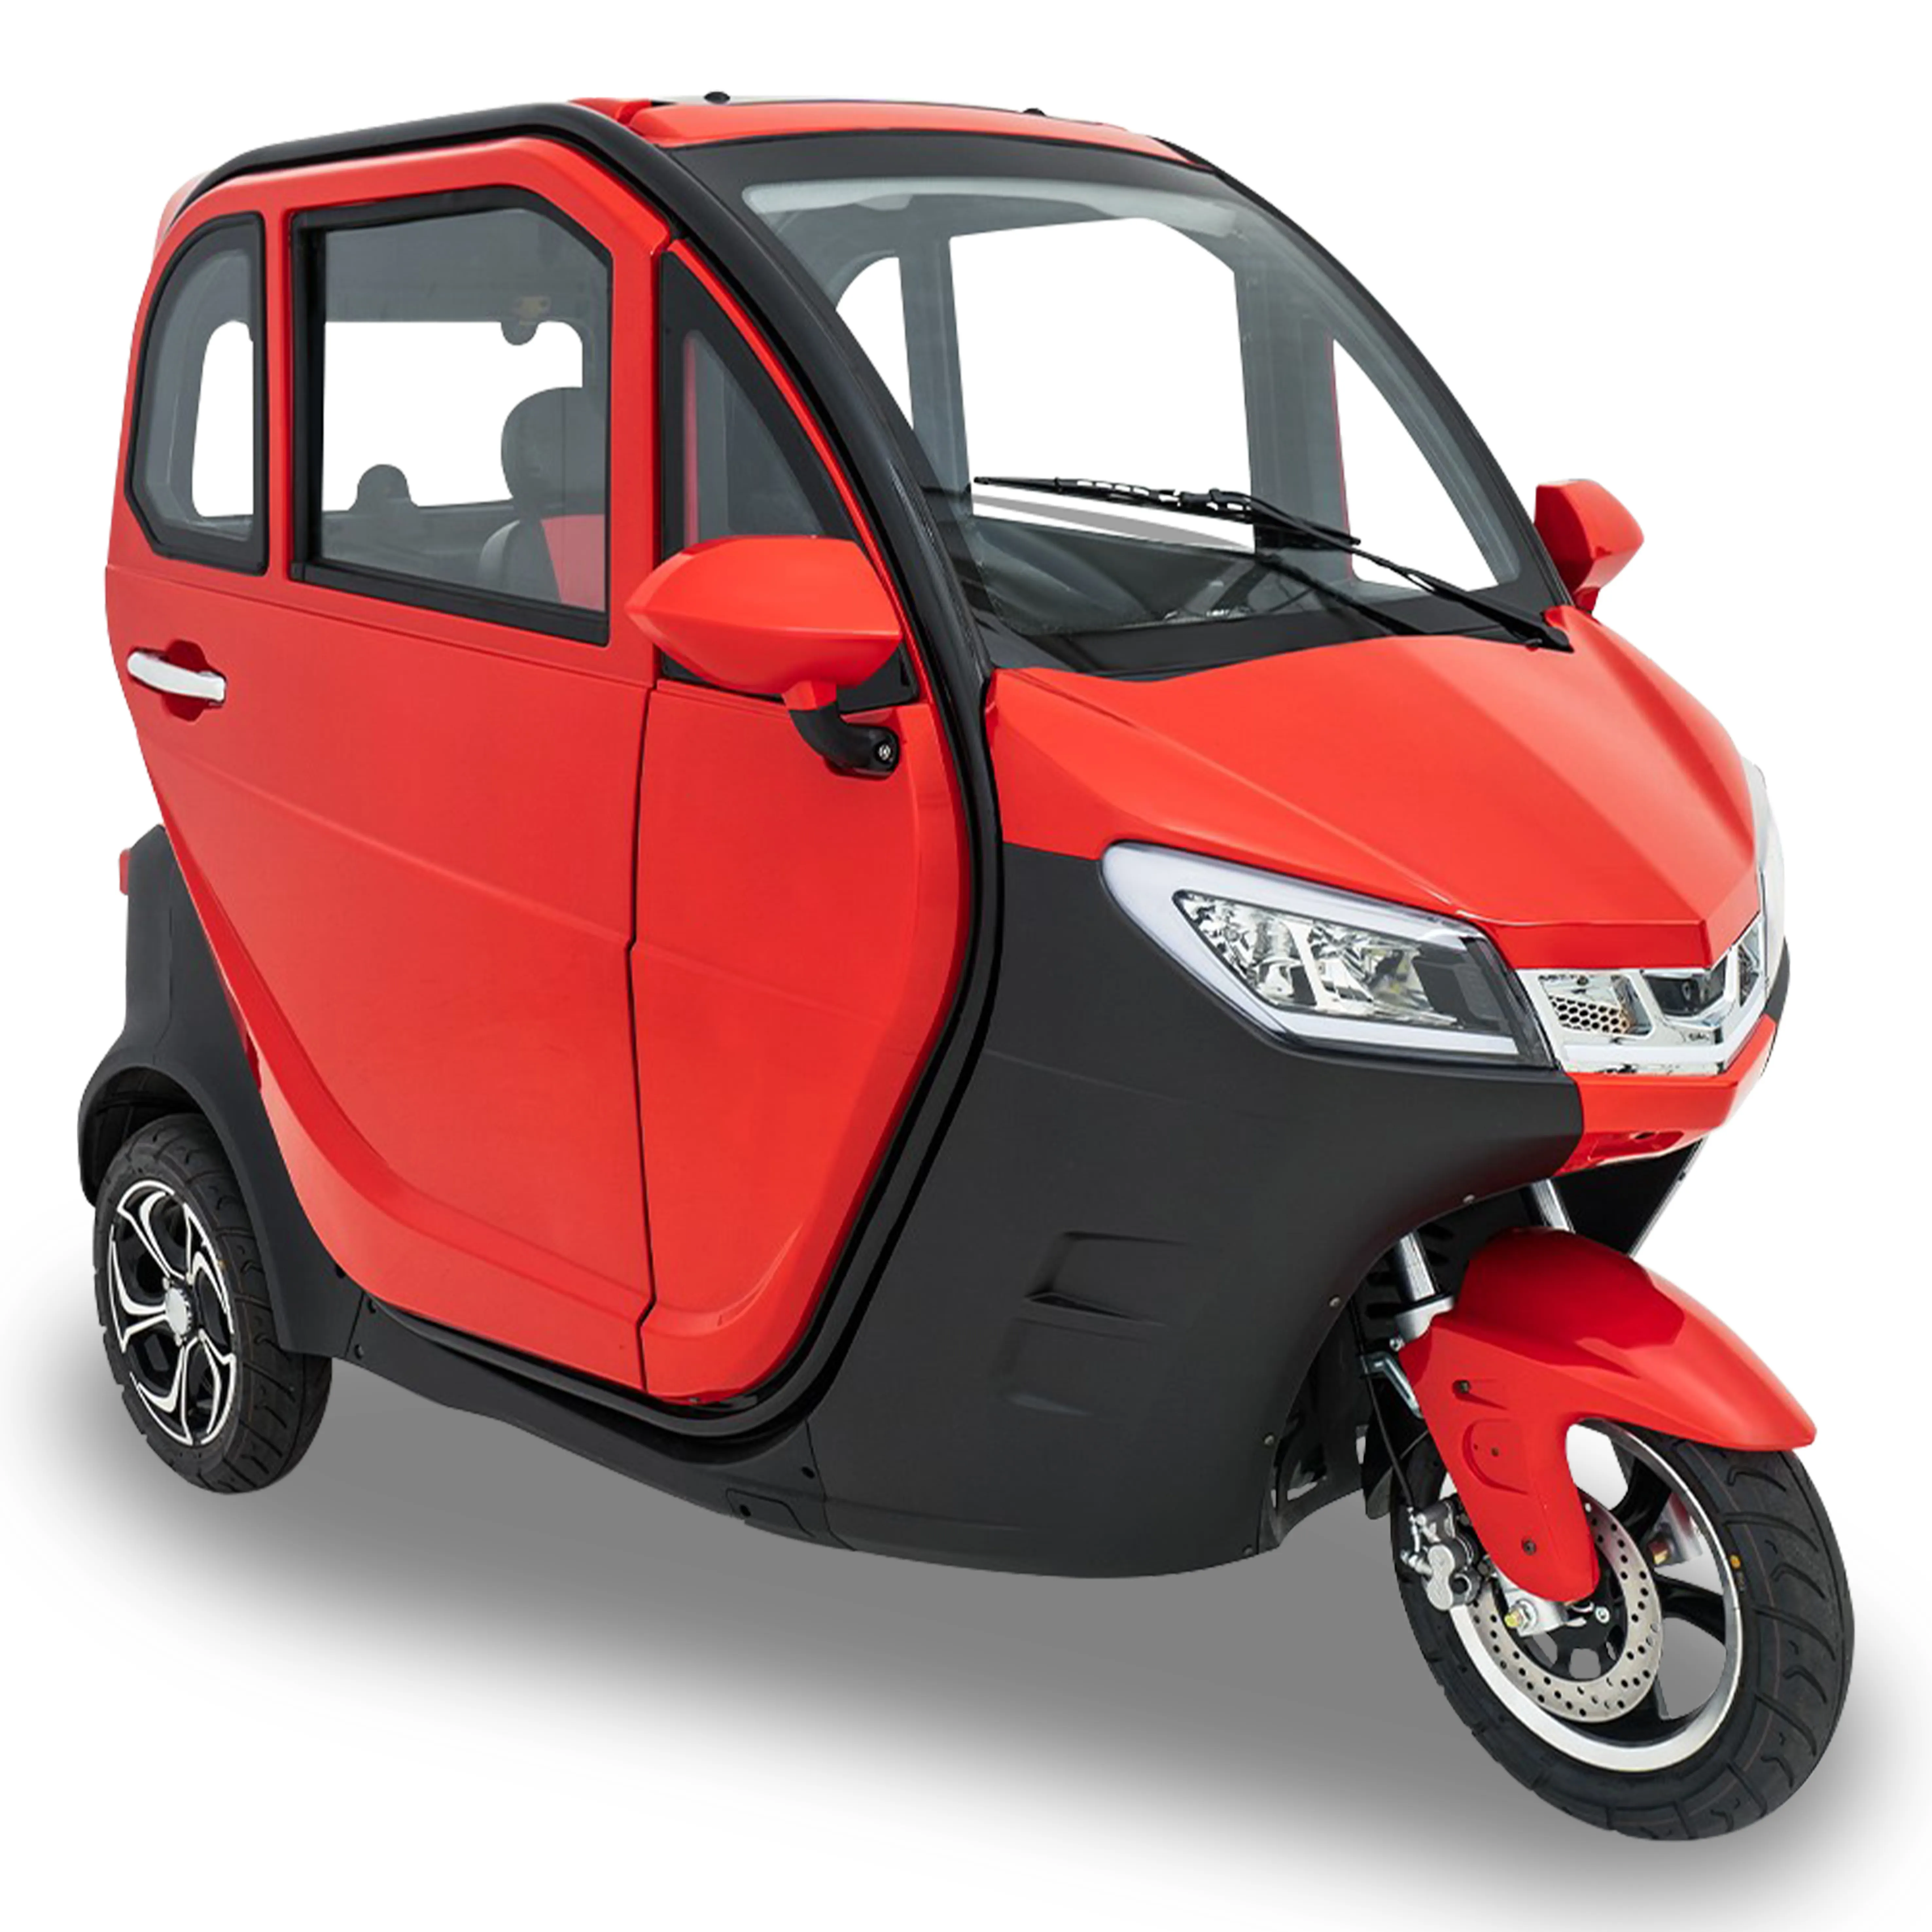 Nuovo triciclo a benzina per carburante completamente chiuso per trasportare passeggeri a tre ruote moto per Taxi